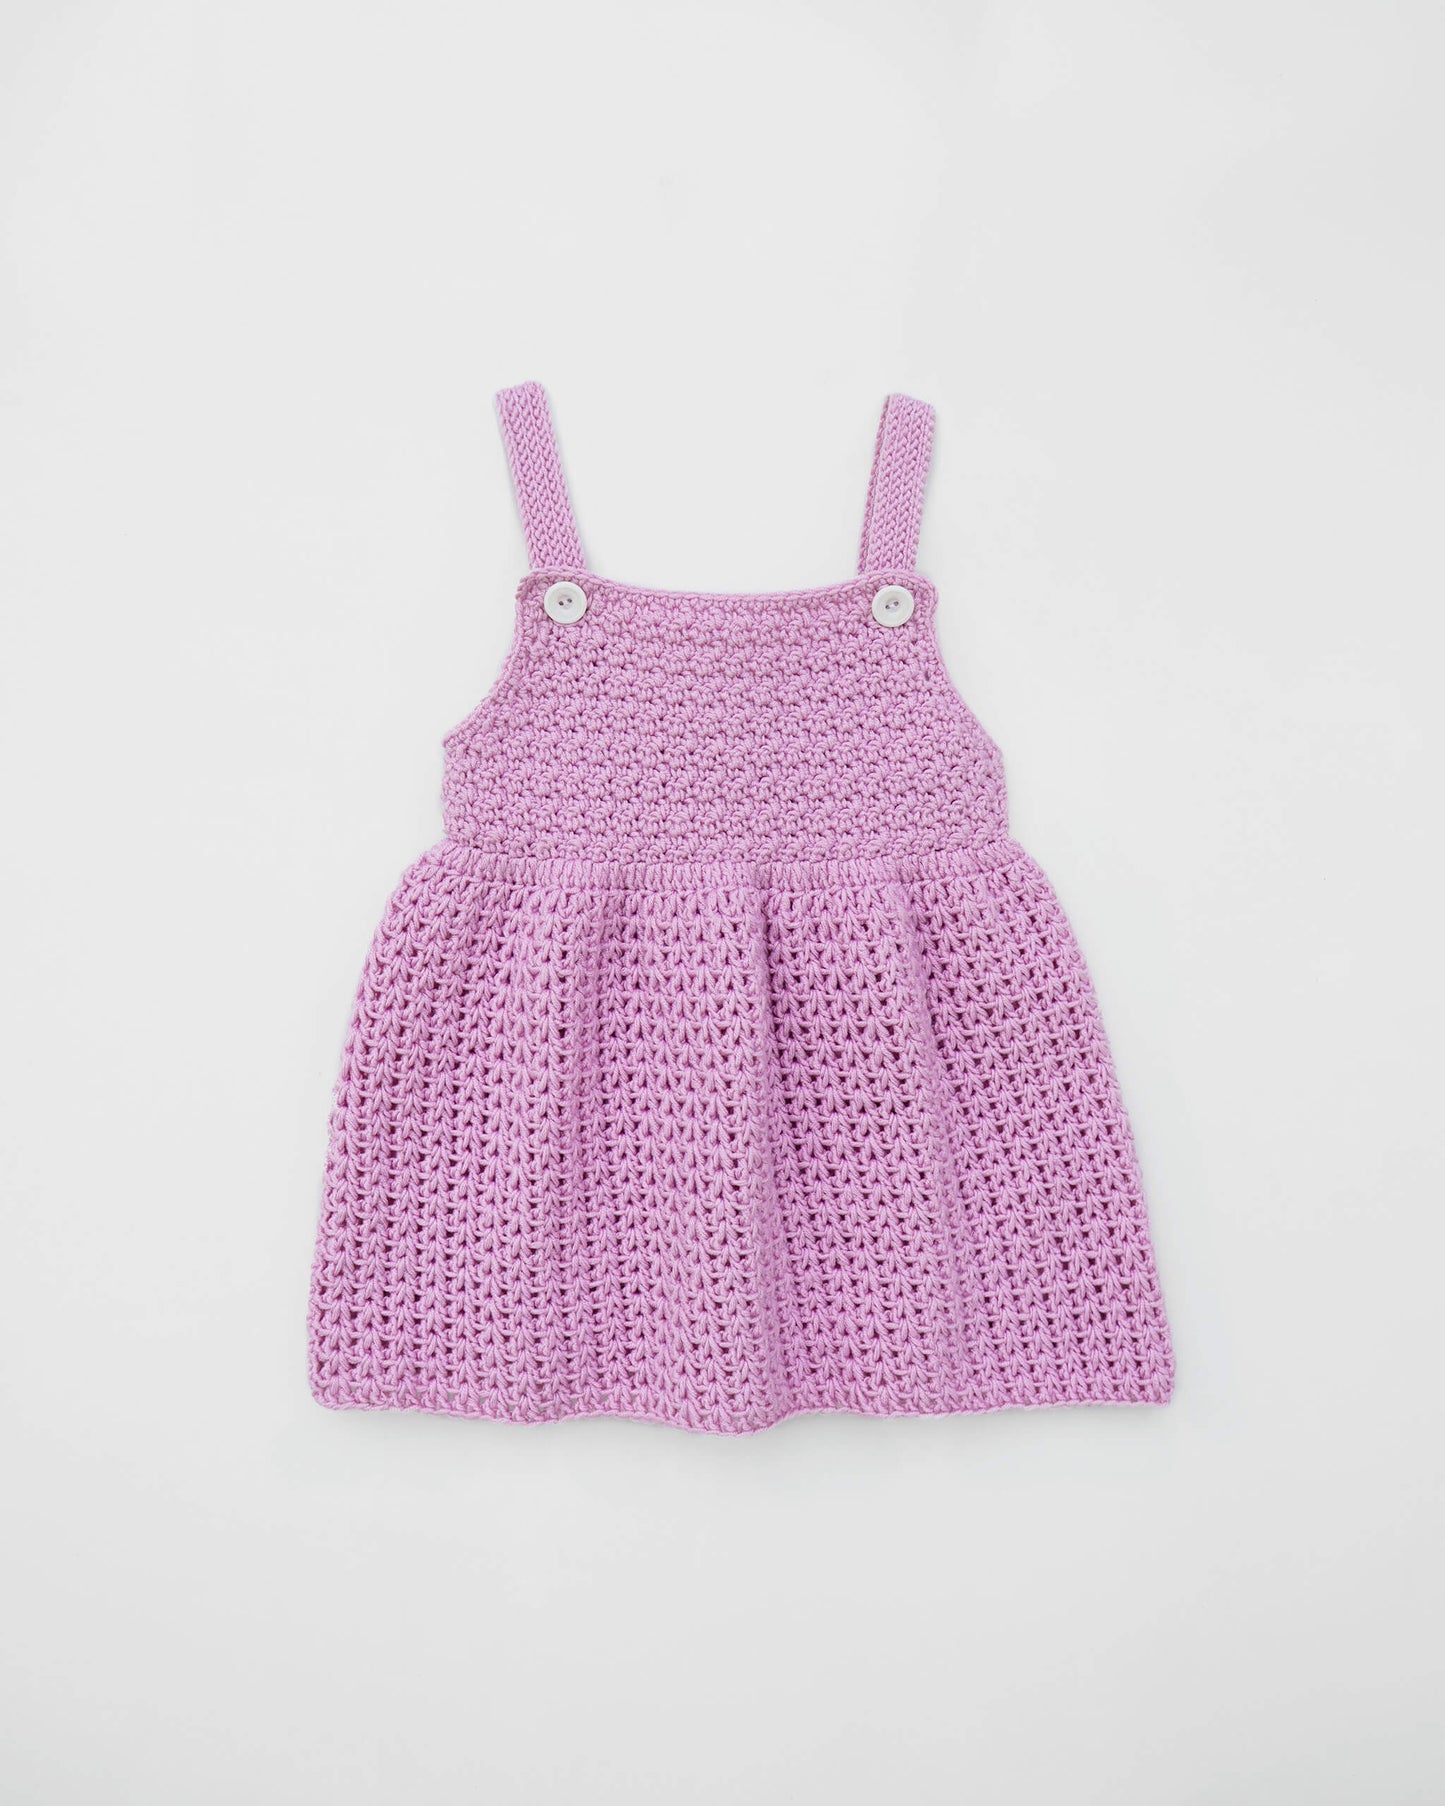 Kids' Dress No.1 | Easy crochet pattern